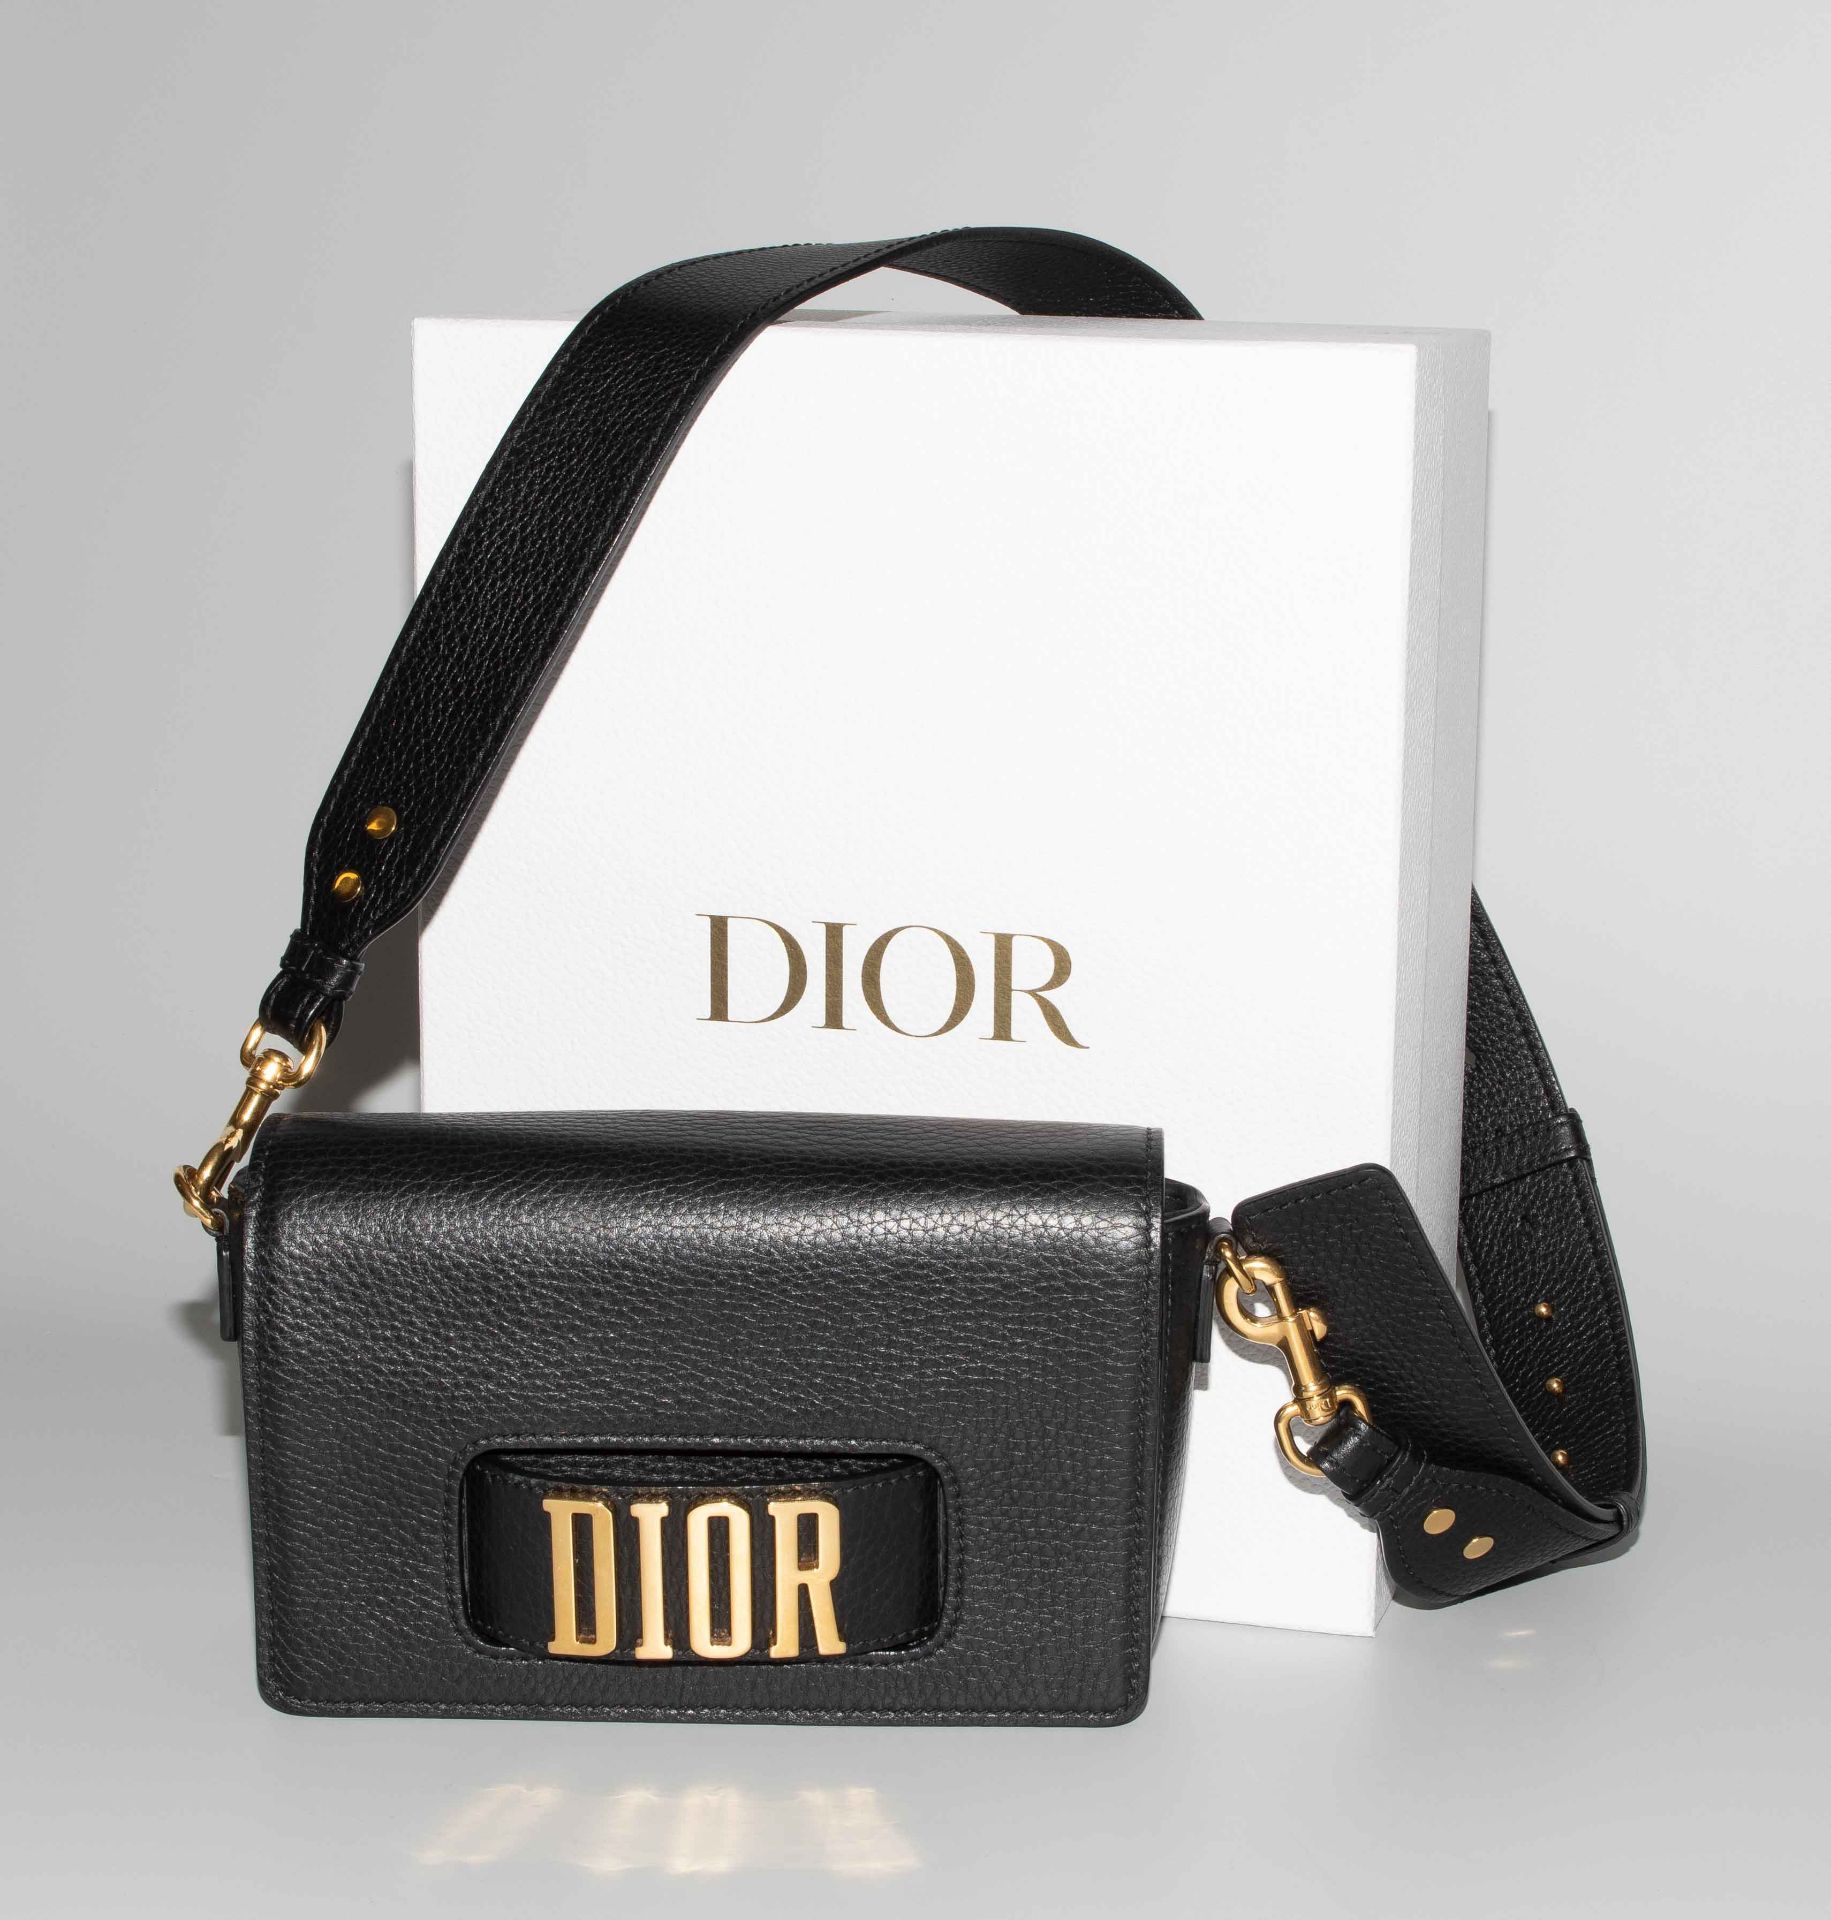 Dior, Handtasche "Dio(r)evolution" - Image 2 of 17